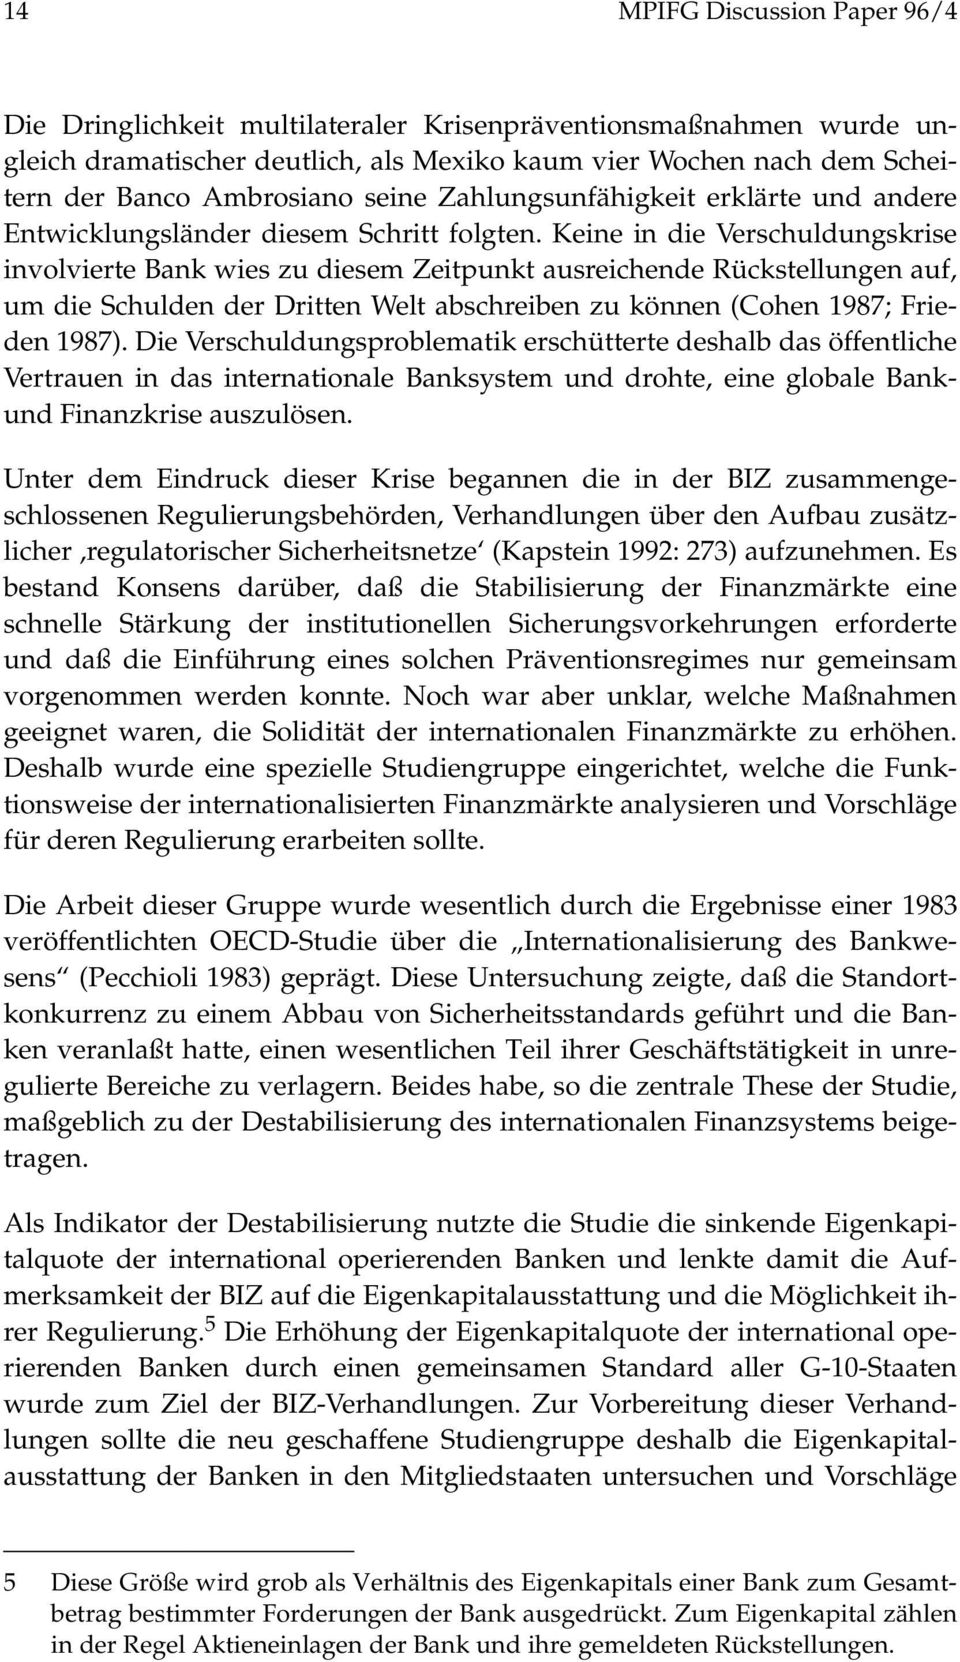 Keine in die Verschuldungskrise involvierte Bank wies zu diesem Zeitpunkt ausreichende Rückstellungen auf, um die Schulden der Dritten Welt abschreiben zu können (Cohen 1987; Frieden 1987).